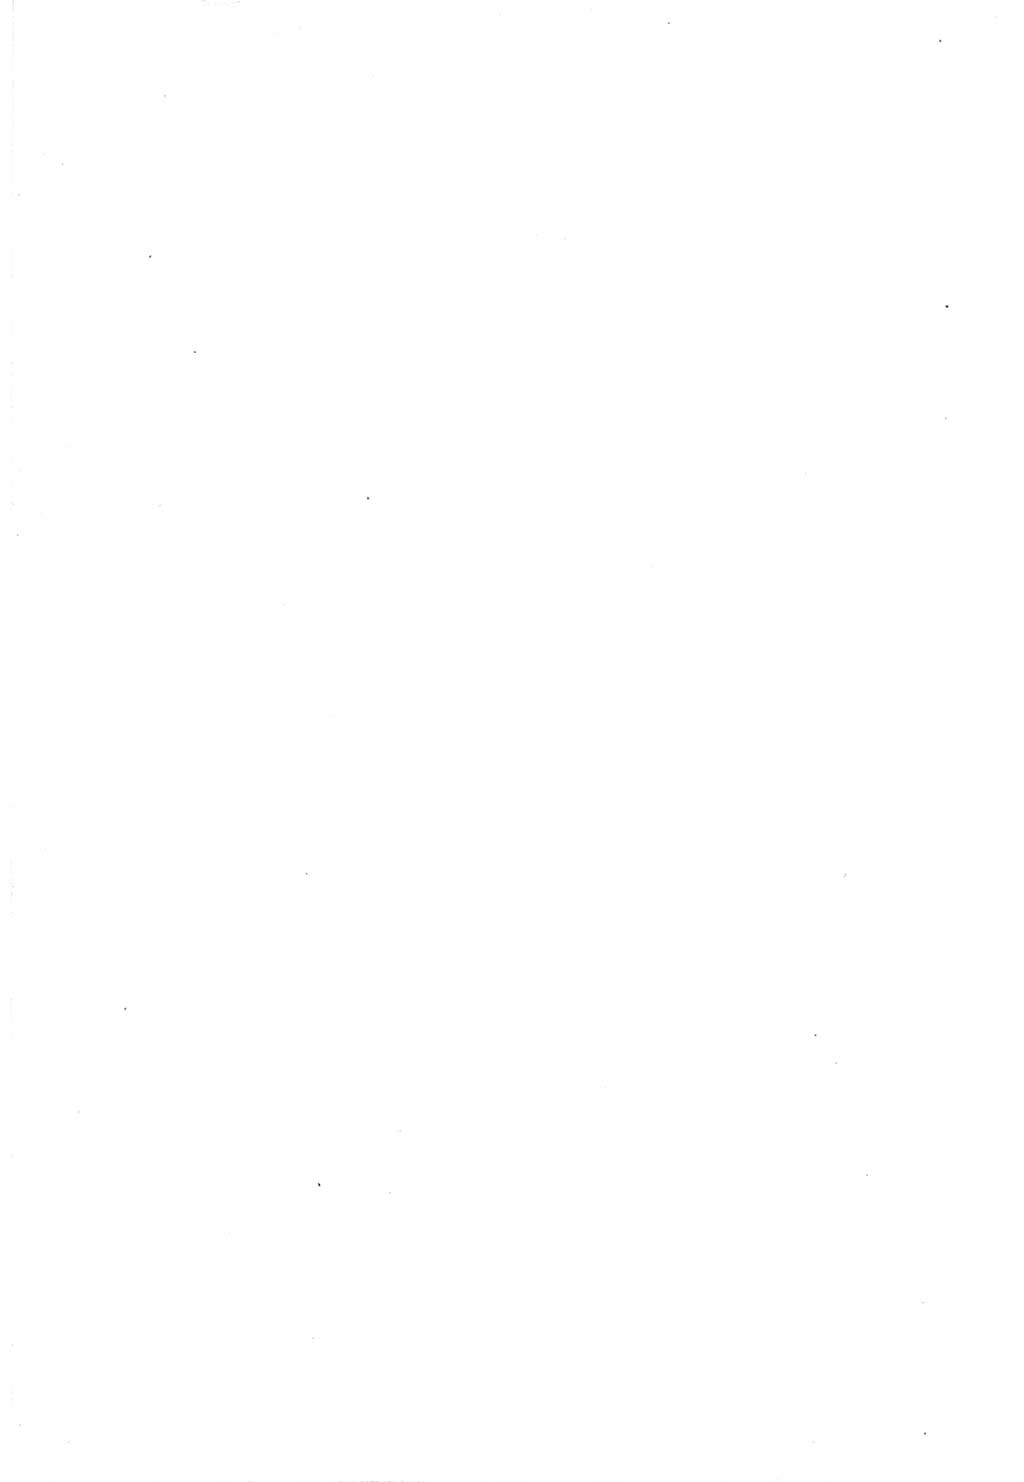 Protokoll der Verhandlungen des Ⅵ. Parteitages der Sozialistischen Einheitspartei Deutschlands (SED) [Deutsche Demokratische Republik (DDR)] 1963, Band Ⅱ, Seite 512 (Prot. Verh. Ⅵ. PT SED DDR 1963, Bd. Ⅱ, S. 512)